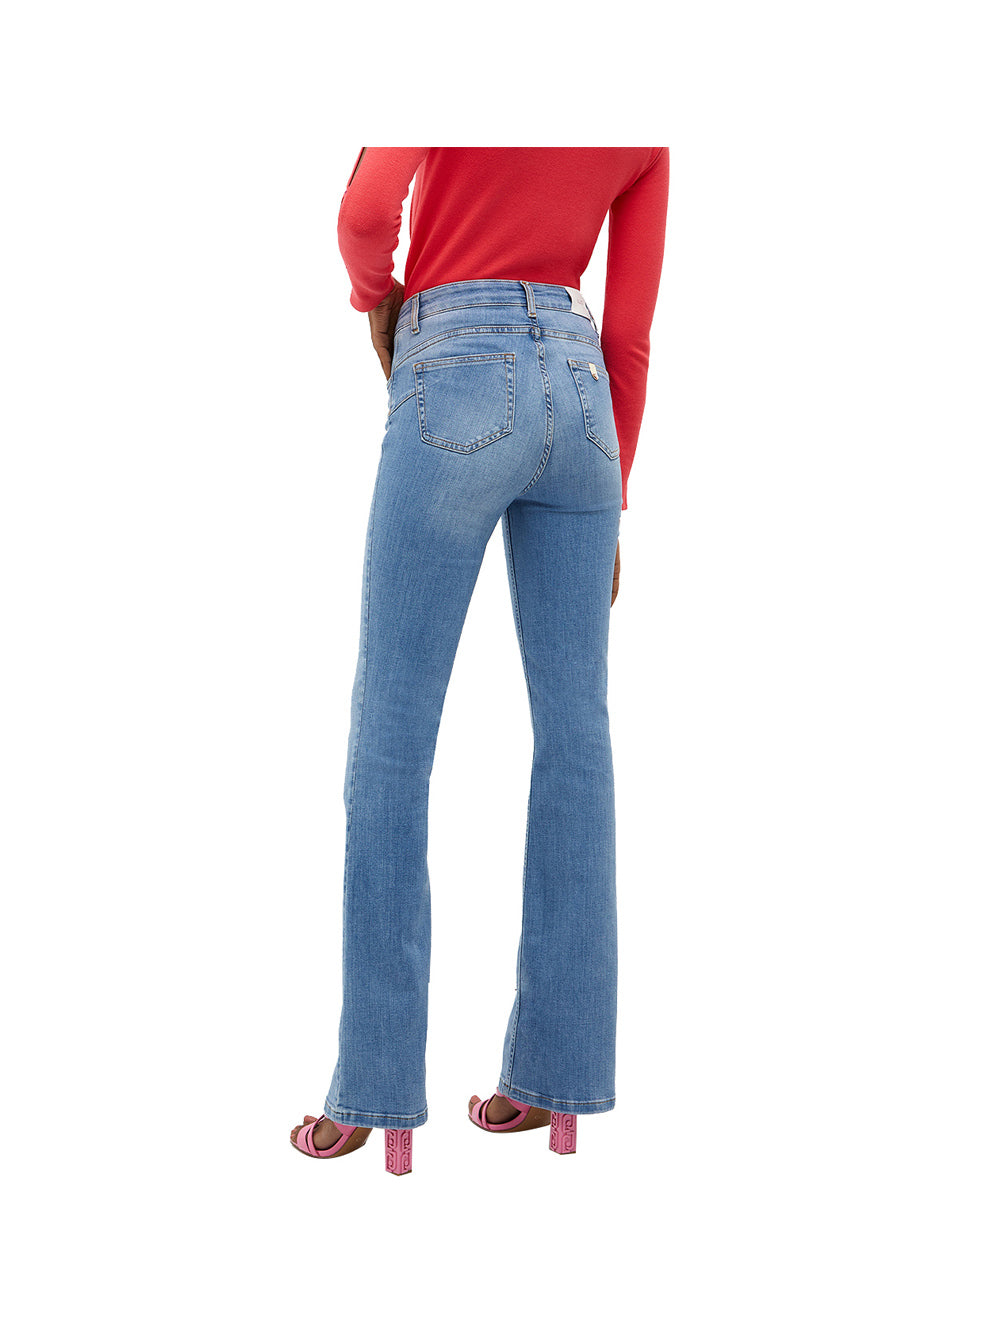 Jeans Donna a vita alta modello a zampa